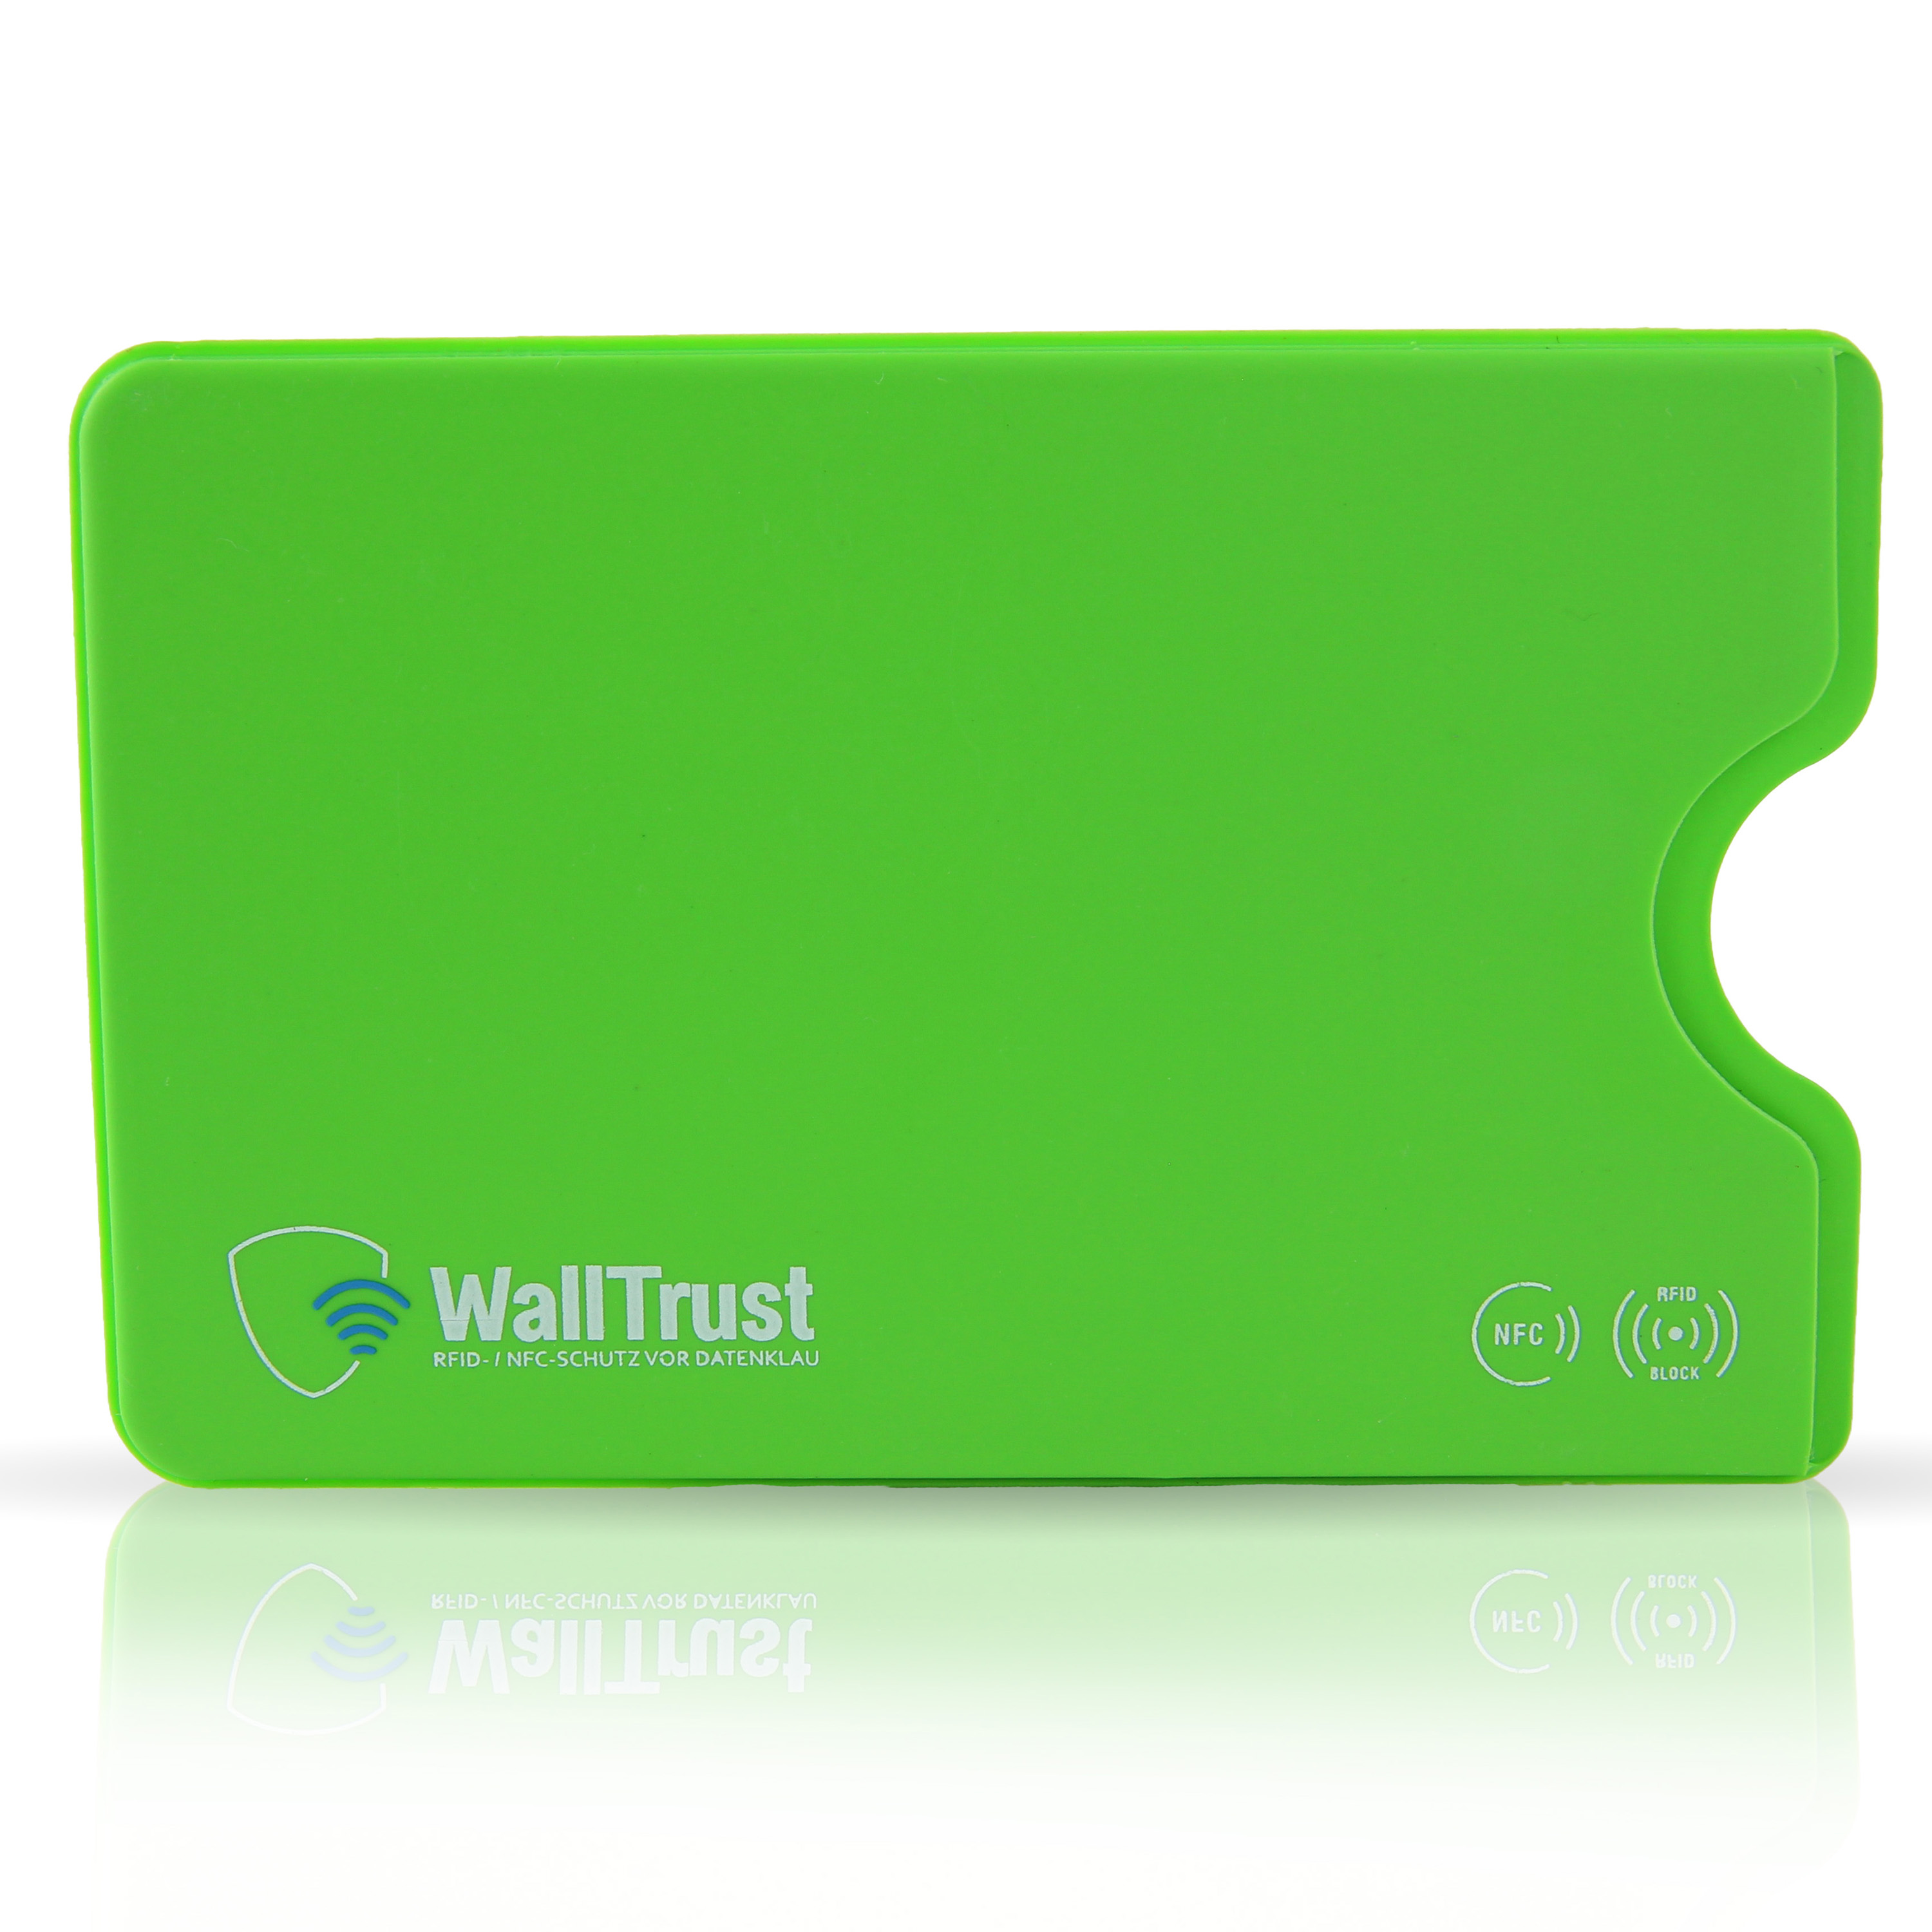 RFID-Schutzhuellen-Kreditkarten-NFC-Blocker-Huellen-Plastik-grün_0003_RFID_Side_Card_colors-033